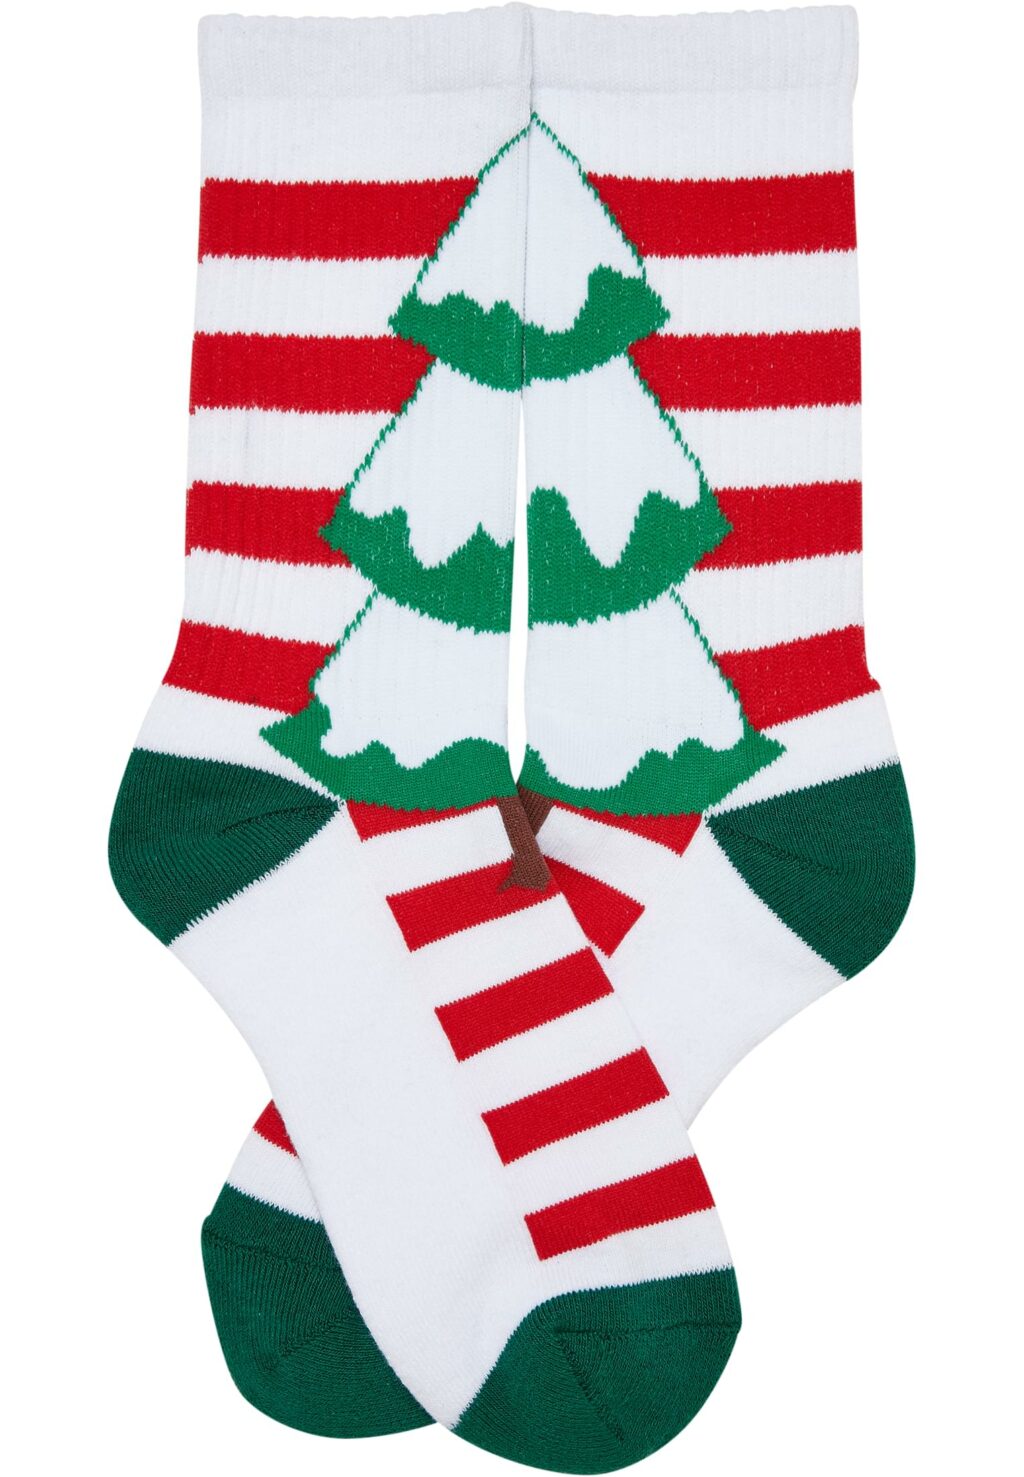 Fancy X-Mas Tree Socks 2-Pack multicolor TB5671